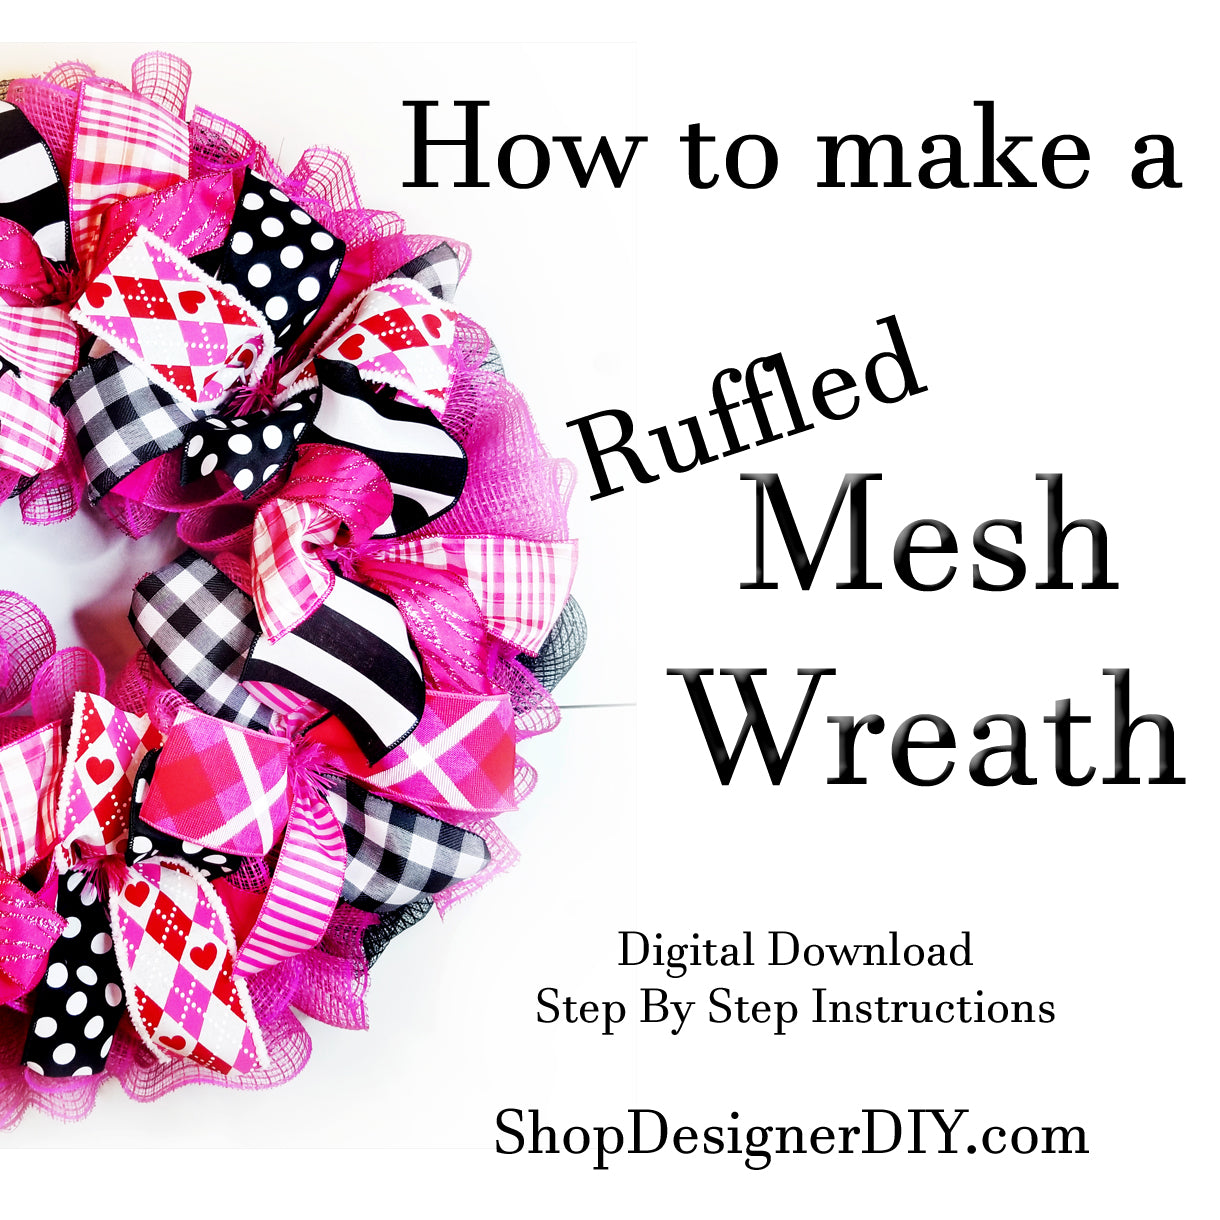 How To Make a Wreath | Digital Download - Designer DIY